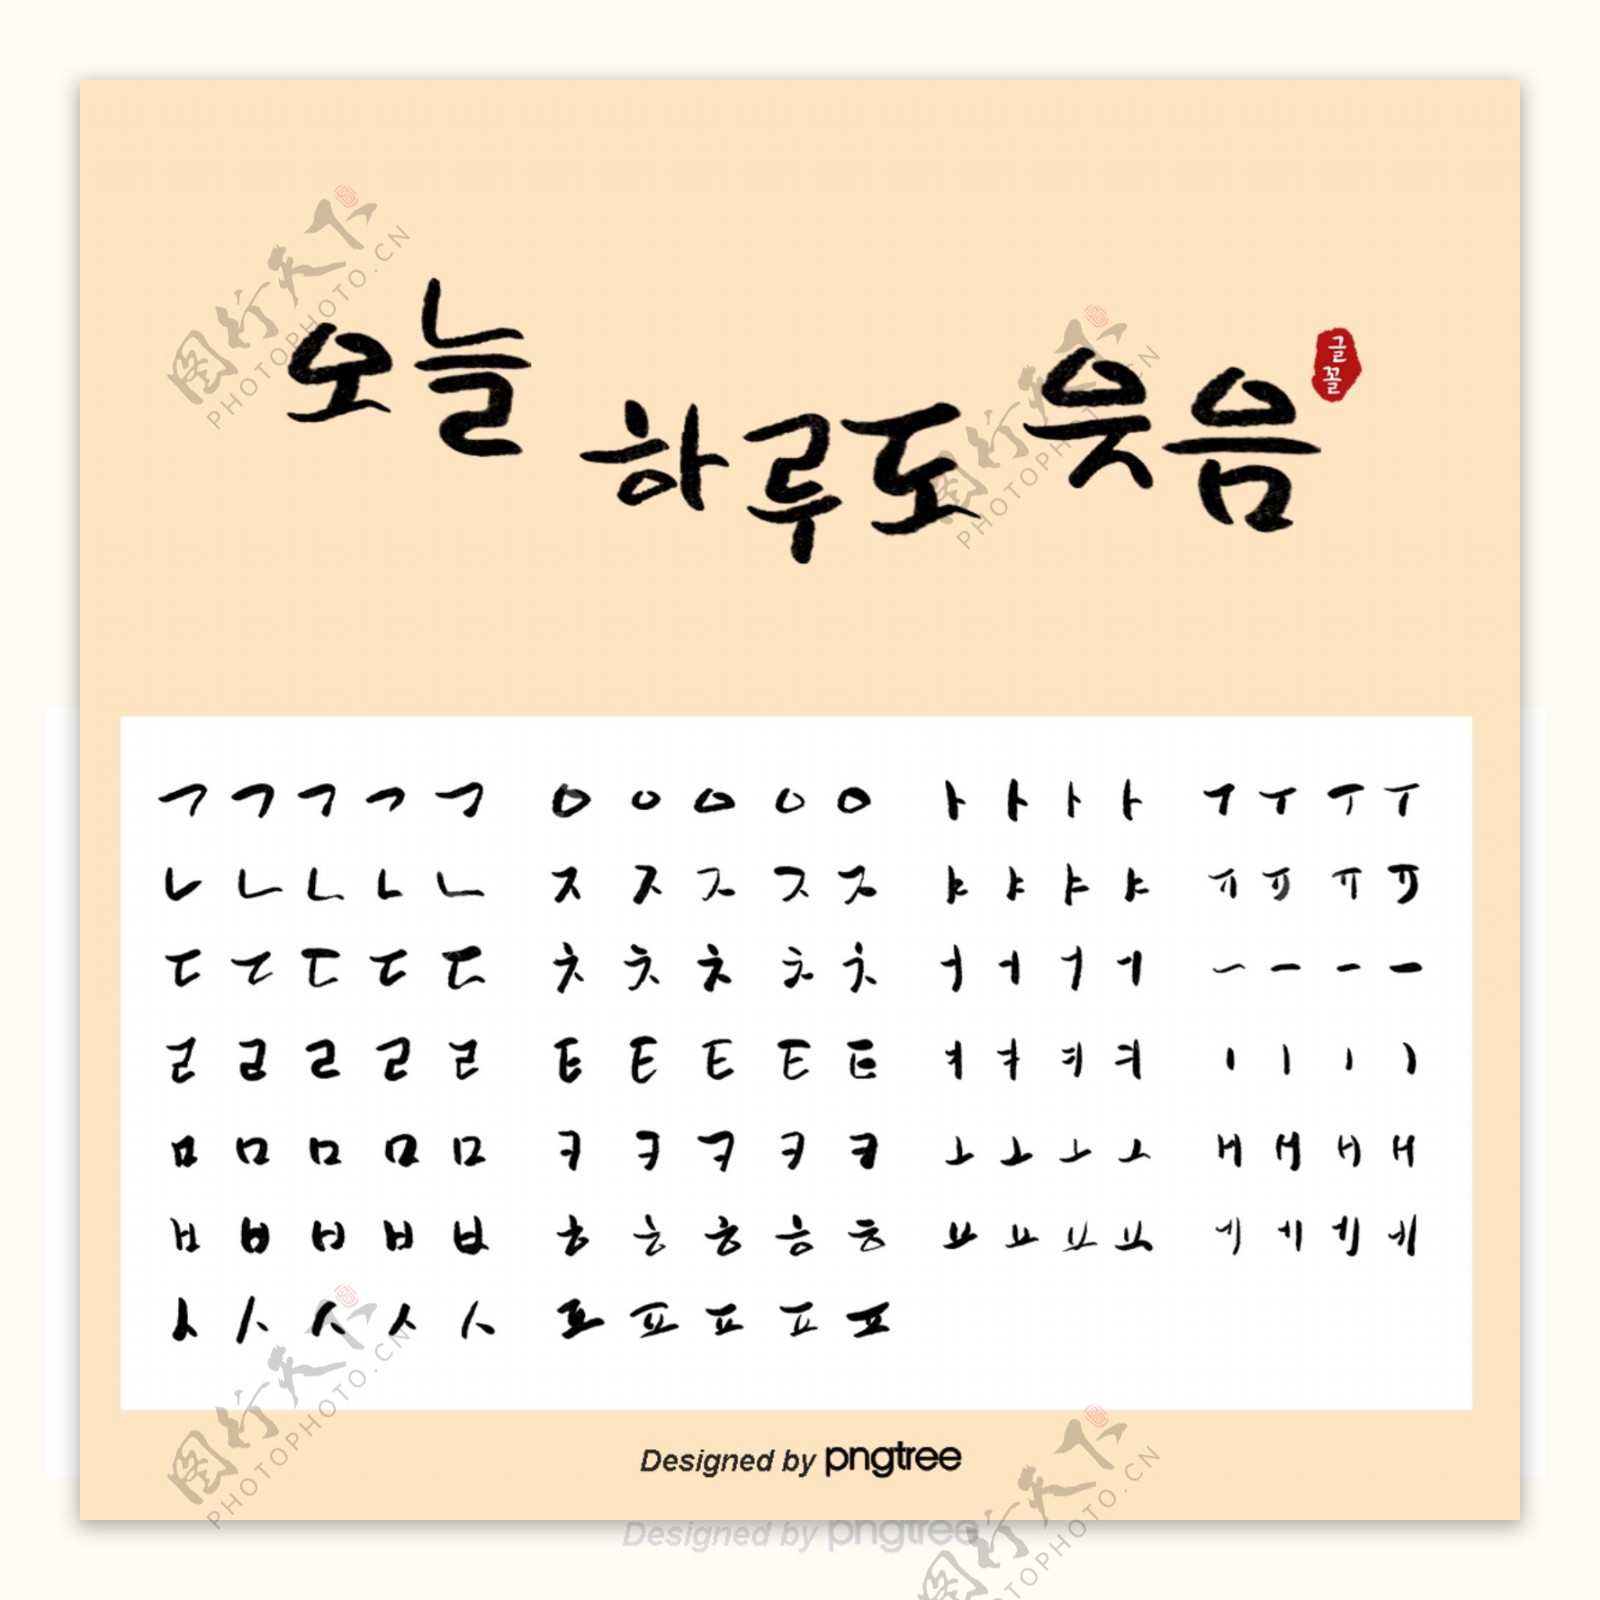 黄色韩语圆滑书法可爱笔画